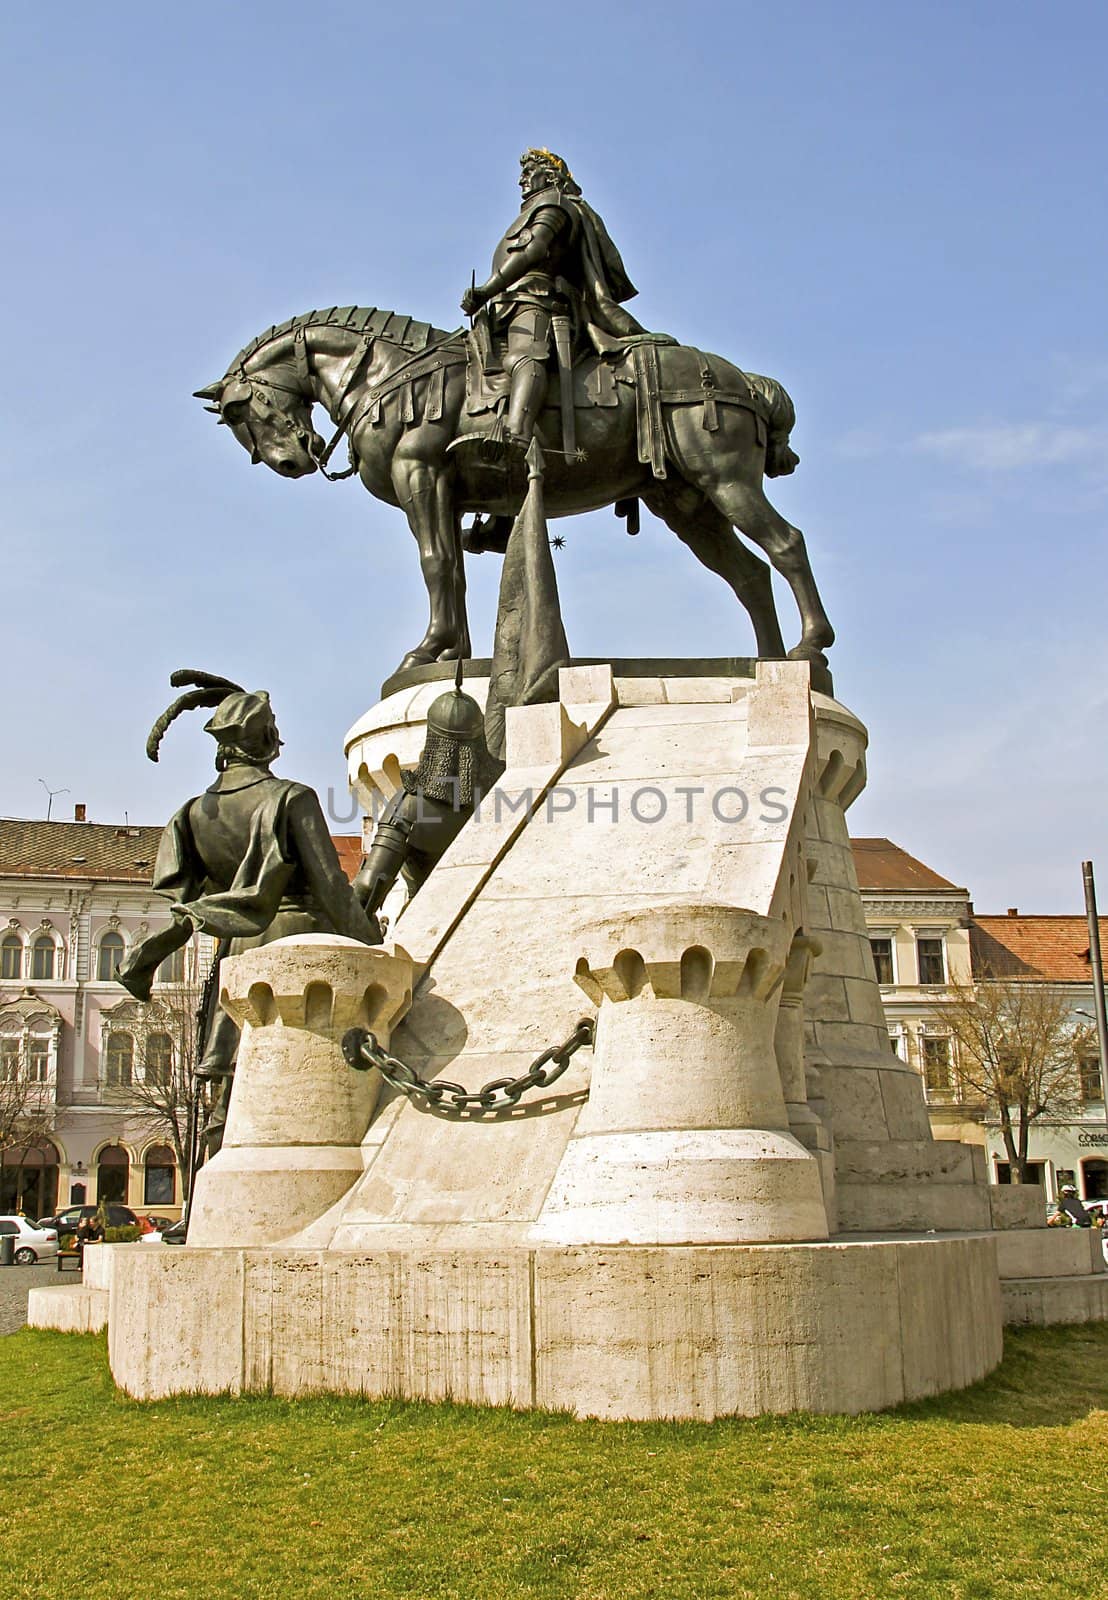 The statue of Matthias Corvinus in Cluj-Napoca, Romania